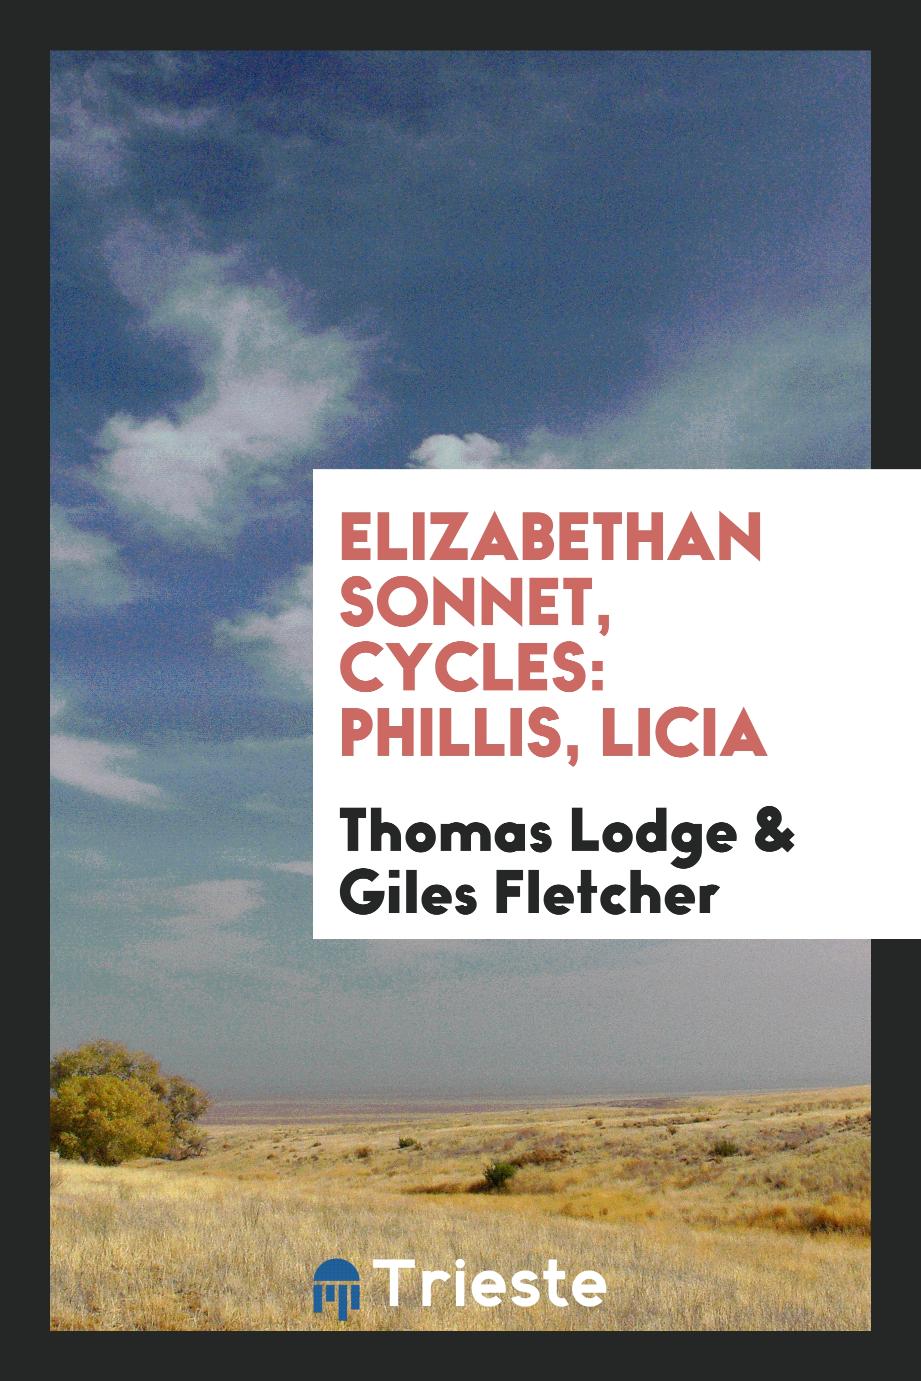 Elizabethan Sonnet, Cycles: Phillis, Licia